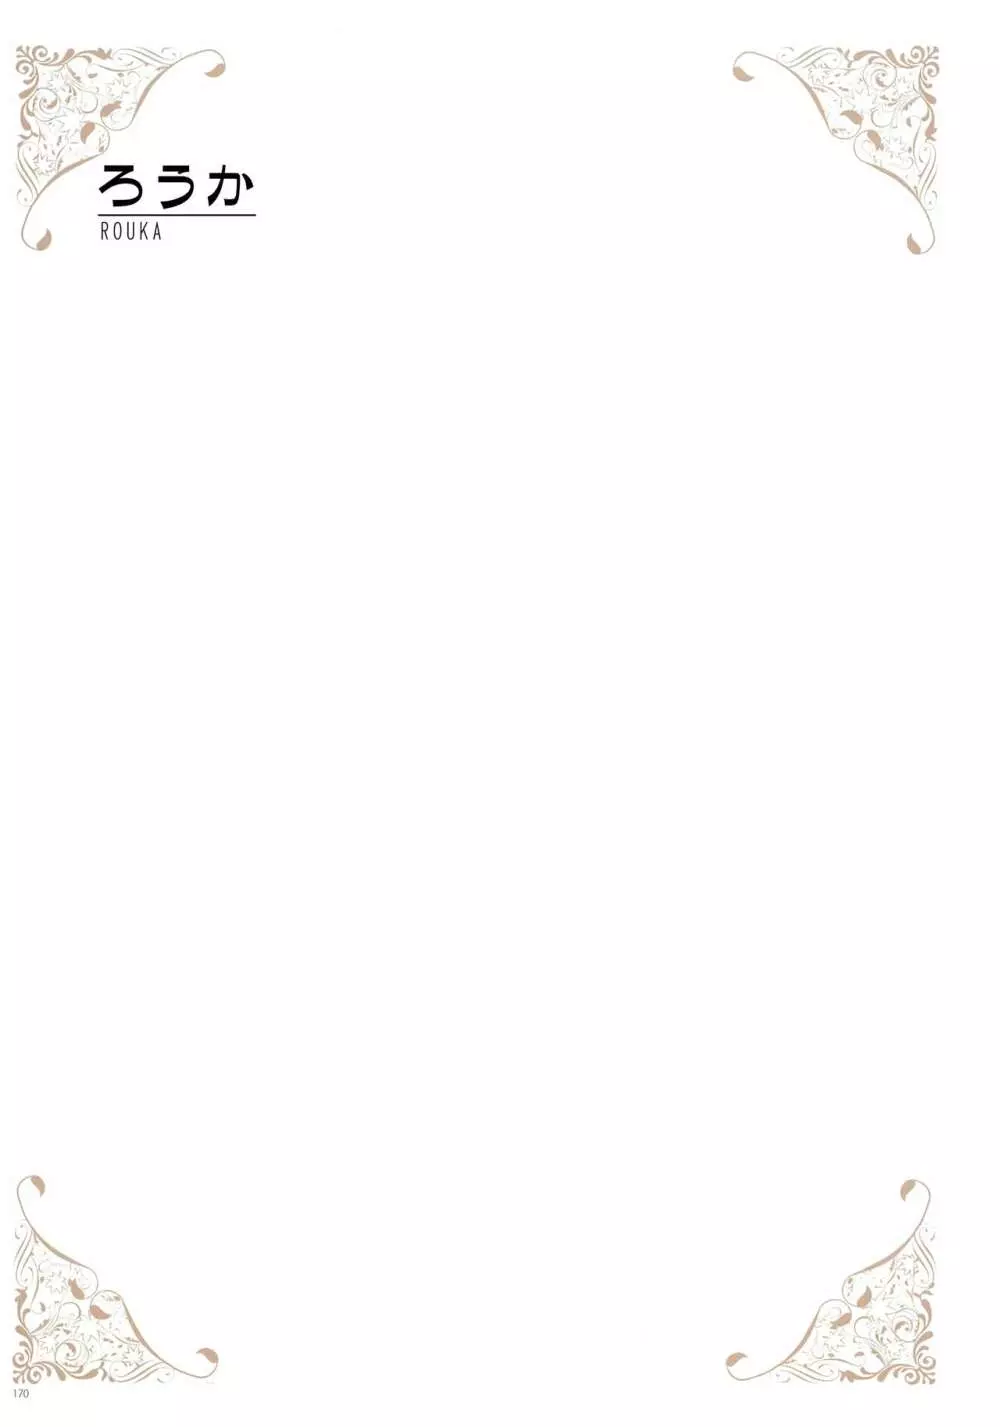 [よろず] うりぼうざっか店 パンツ特化型画集「Under wears 4-PINK LABEL-」+ Message Collection BOOK 170ページ